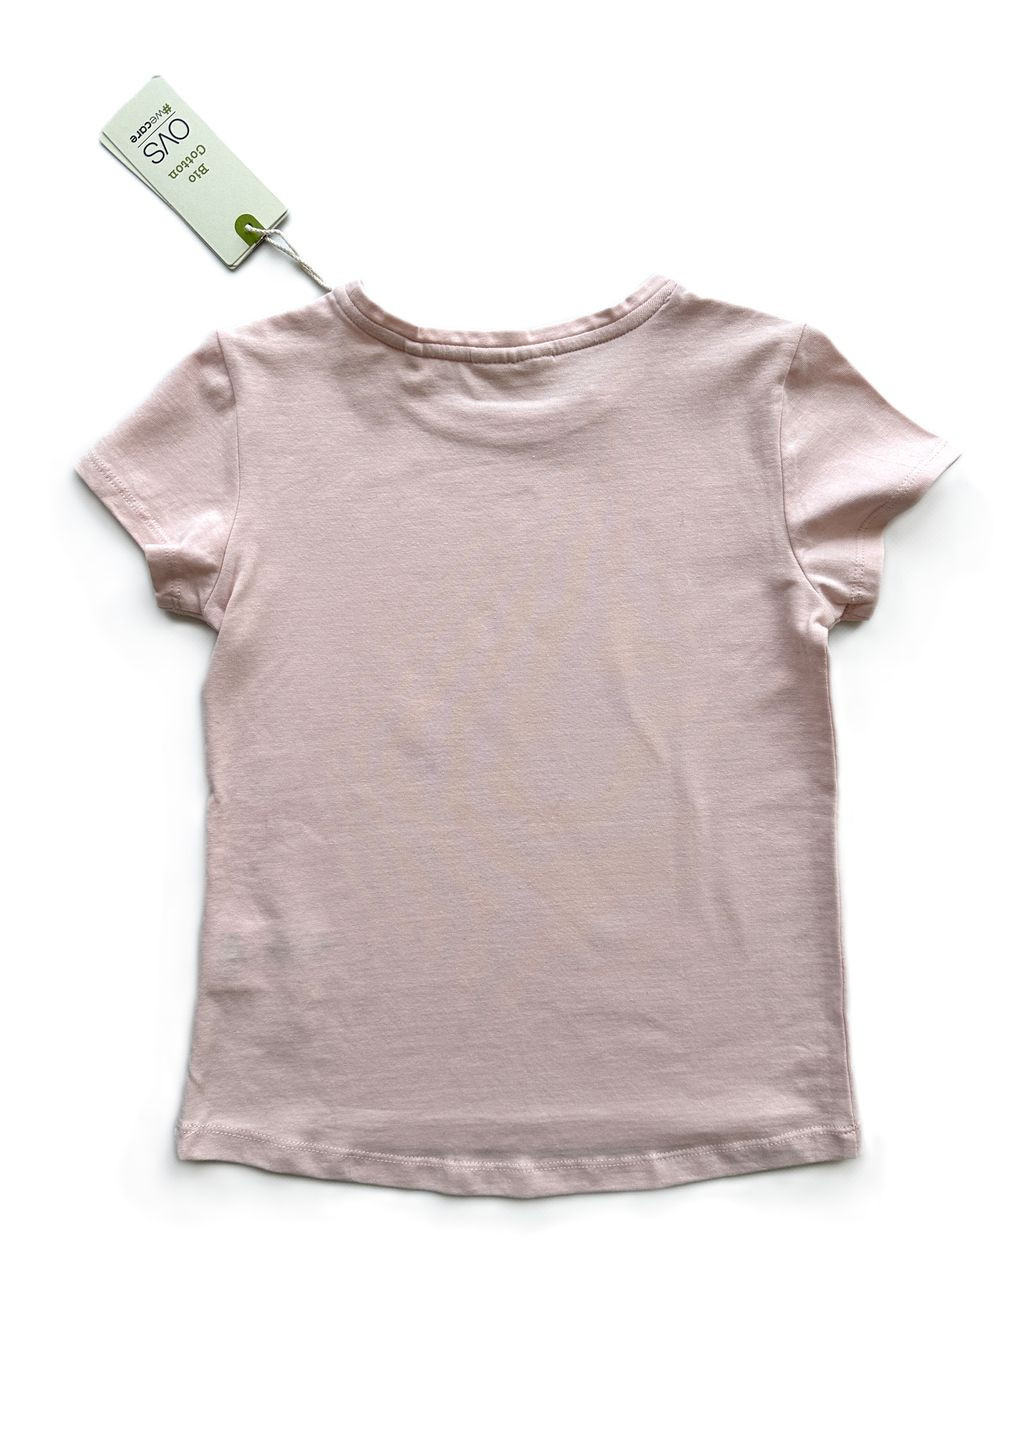 Пудровый летний комплект костюм для девочки футболка пудровая 2000-20+ леггинсы серые трикотажные 2000-96 (116 см) OVS